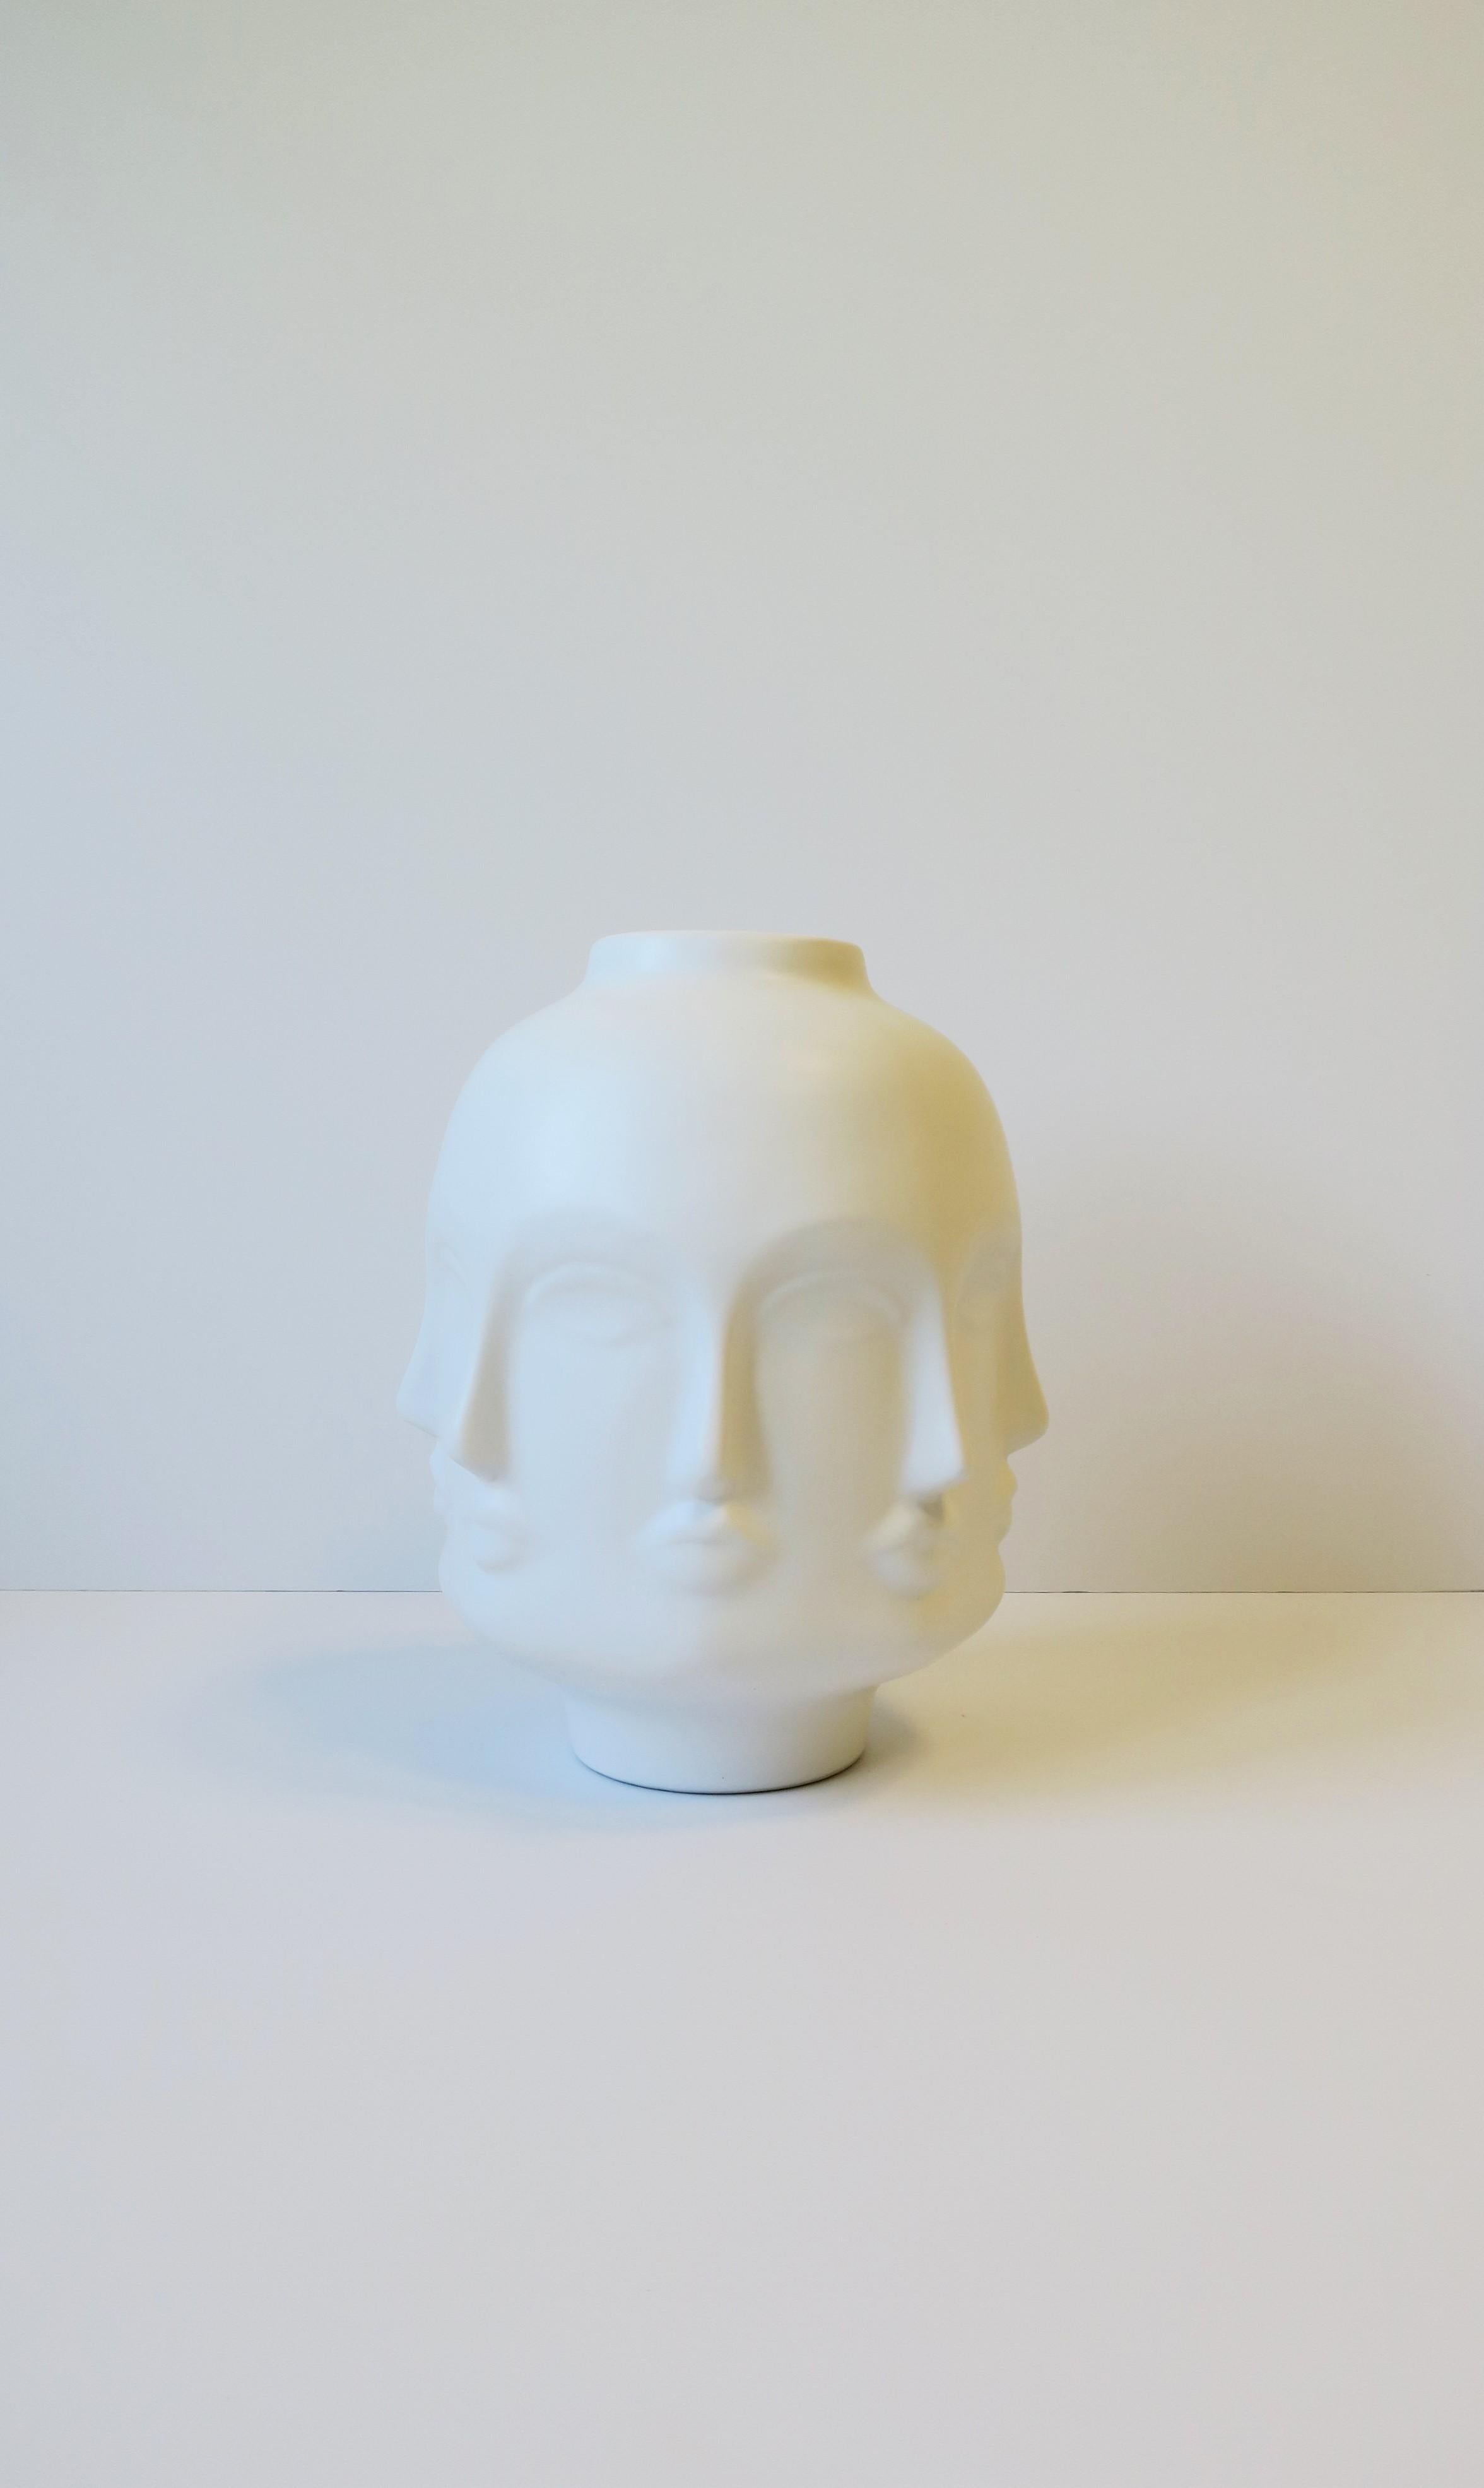 Vase à visages en céramique blanche relativement grand, dans le style du designer italien Piero Fornasetti. Ce vase-sculpture peut faire une belle entrée en matière dans une pièce ; bibliothèque, table à cocktail, crédence, bureau, bibliothèque,